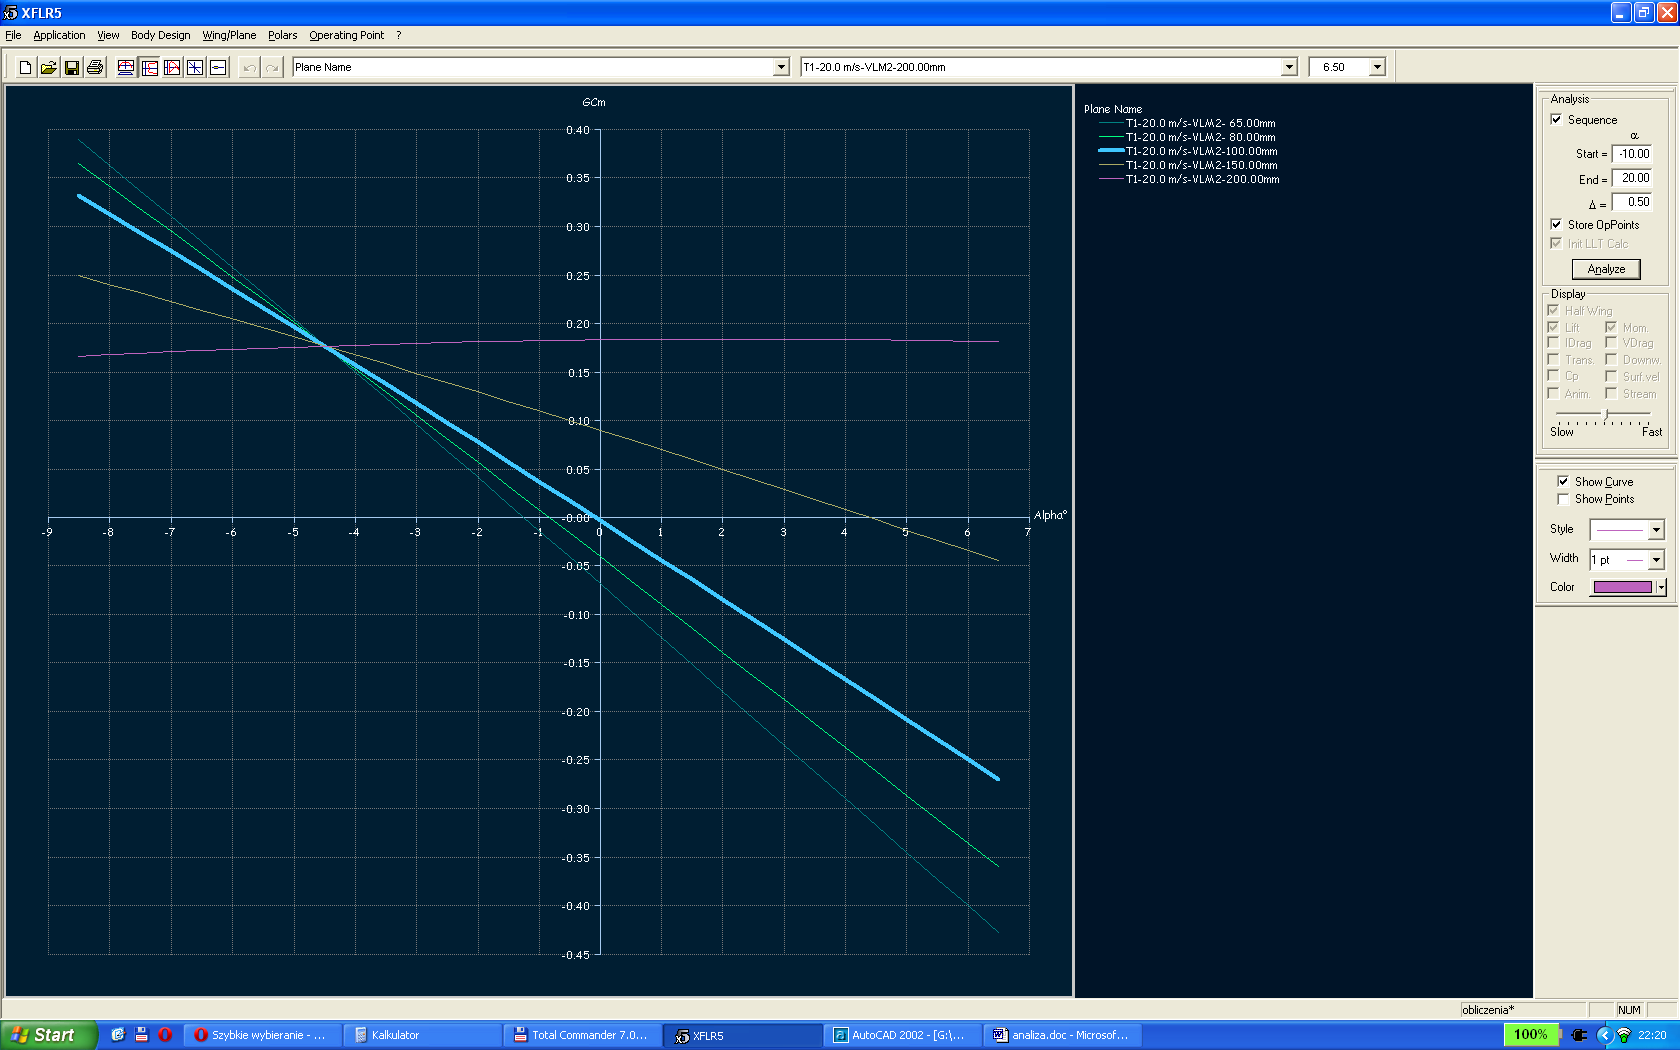 Analiza samolotu: kąt zaklinowania płata = 2, statecznika = 0 Porównanie wyników dla prędkości 10 m/s i 20 m/s.